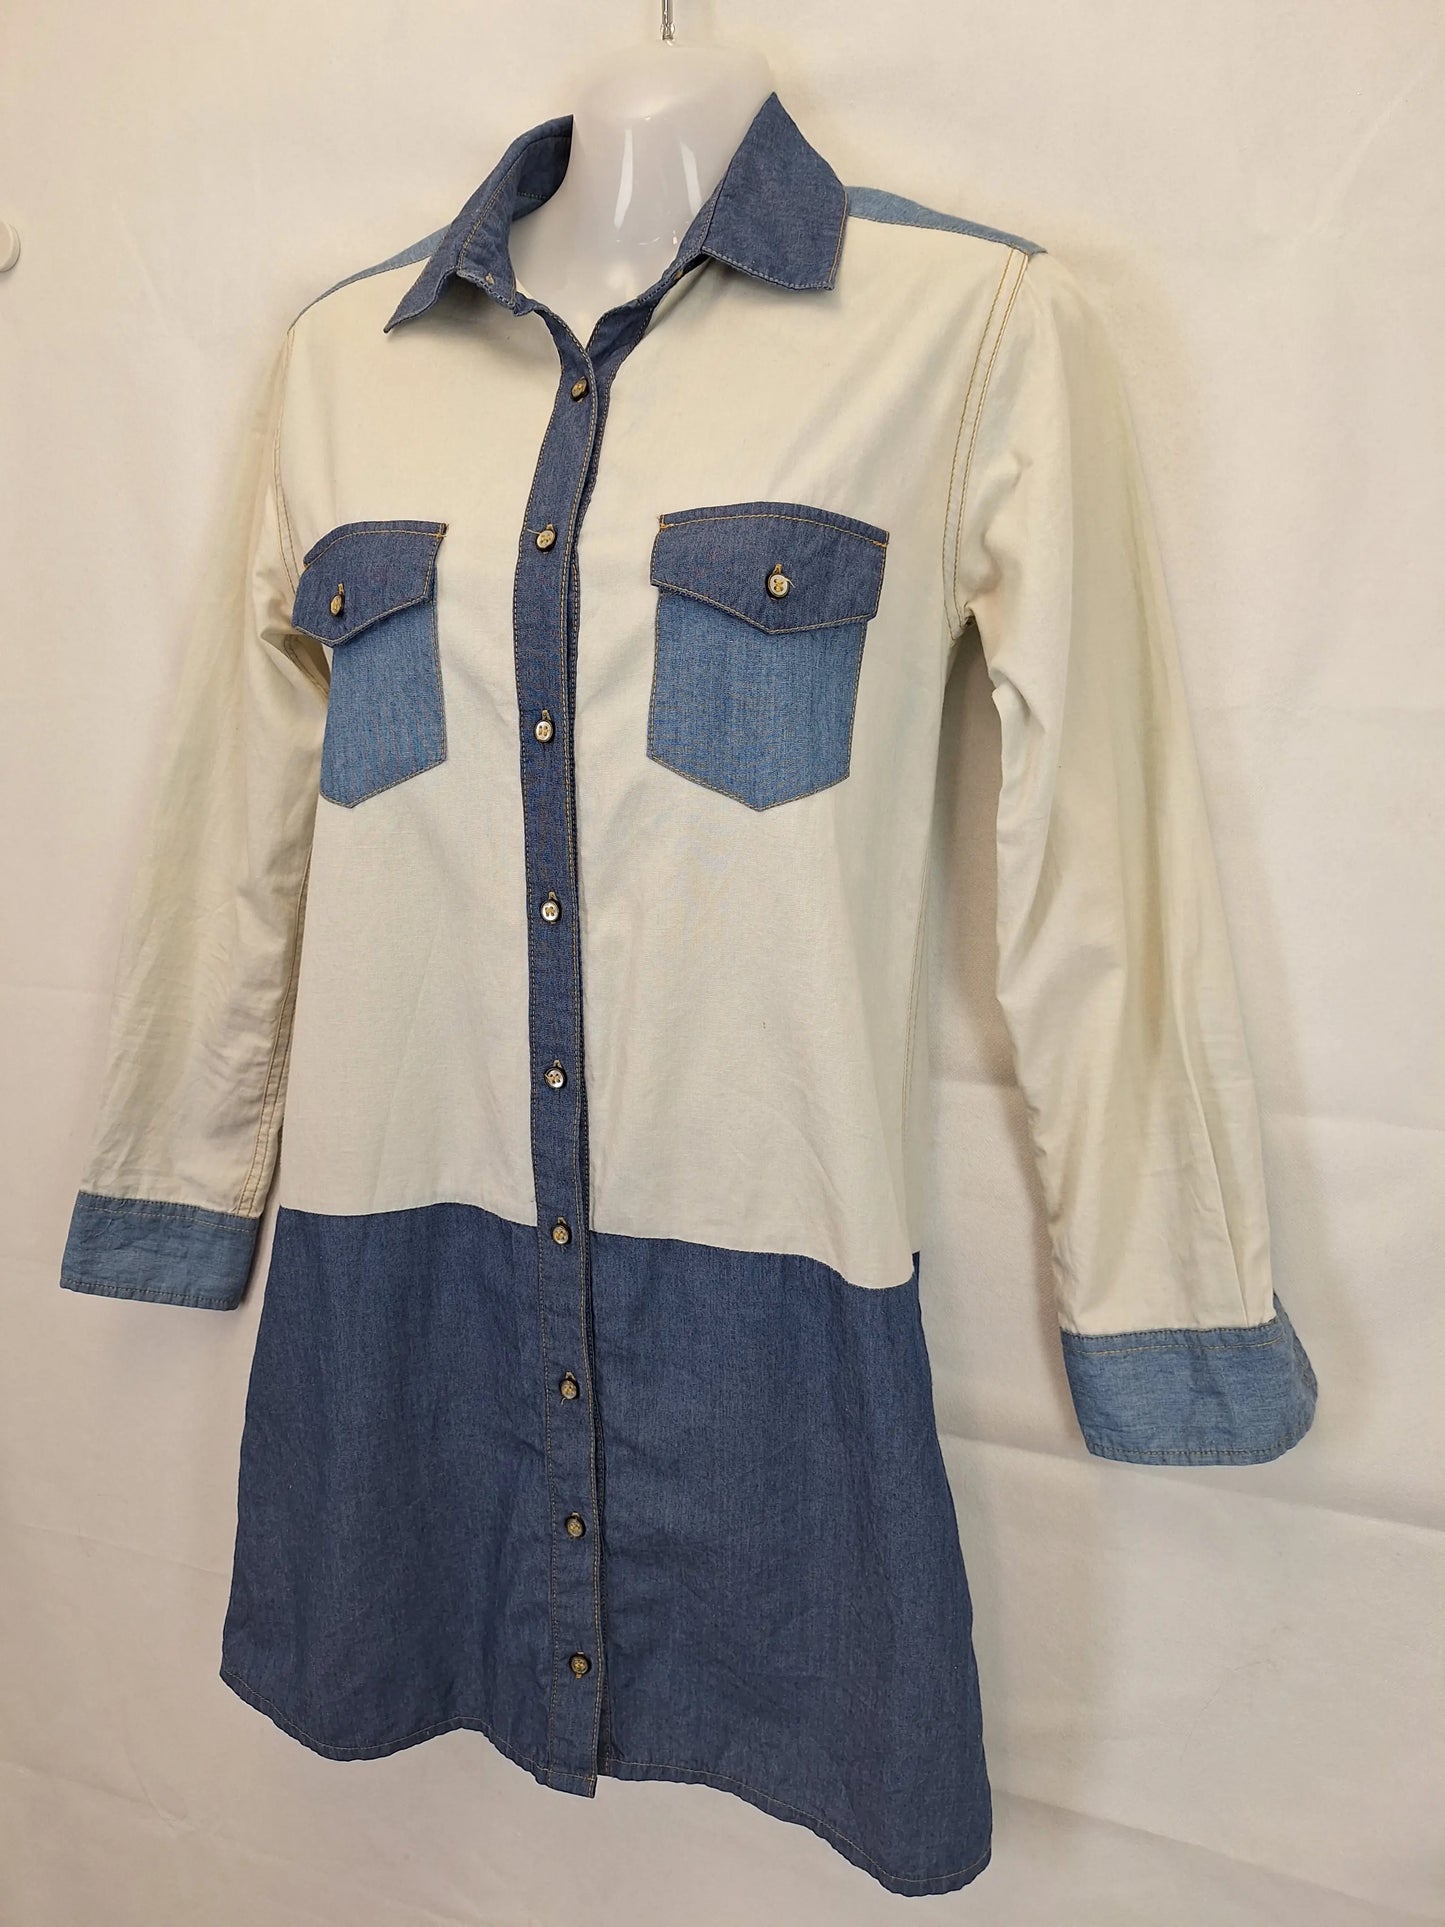 Gorman Half Denim Minii Dress Size 6 by SwapUp-Online Second Hand Store-Online Thrift Store